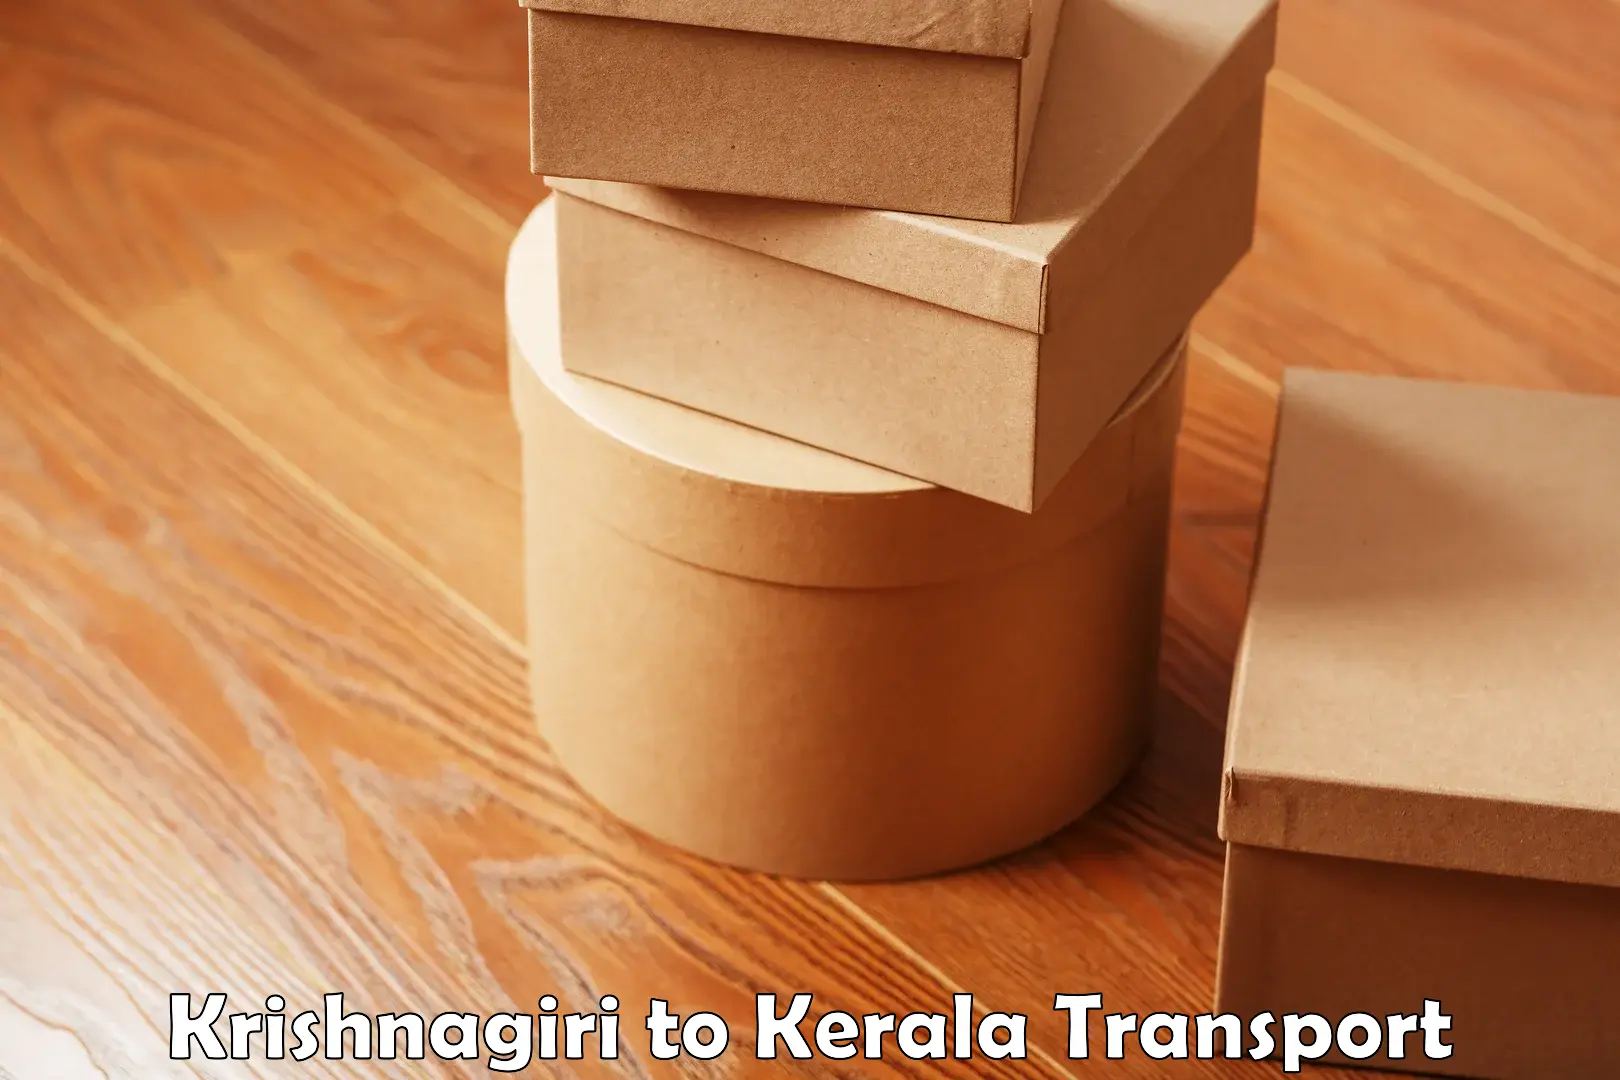 Truck transport companies in India Krishnagiri to Kondotty